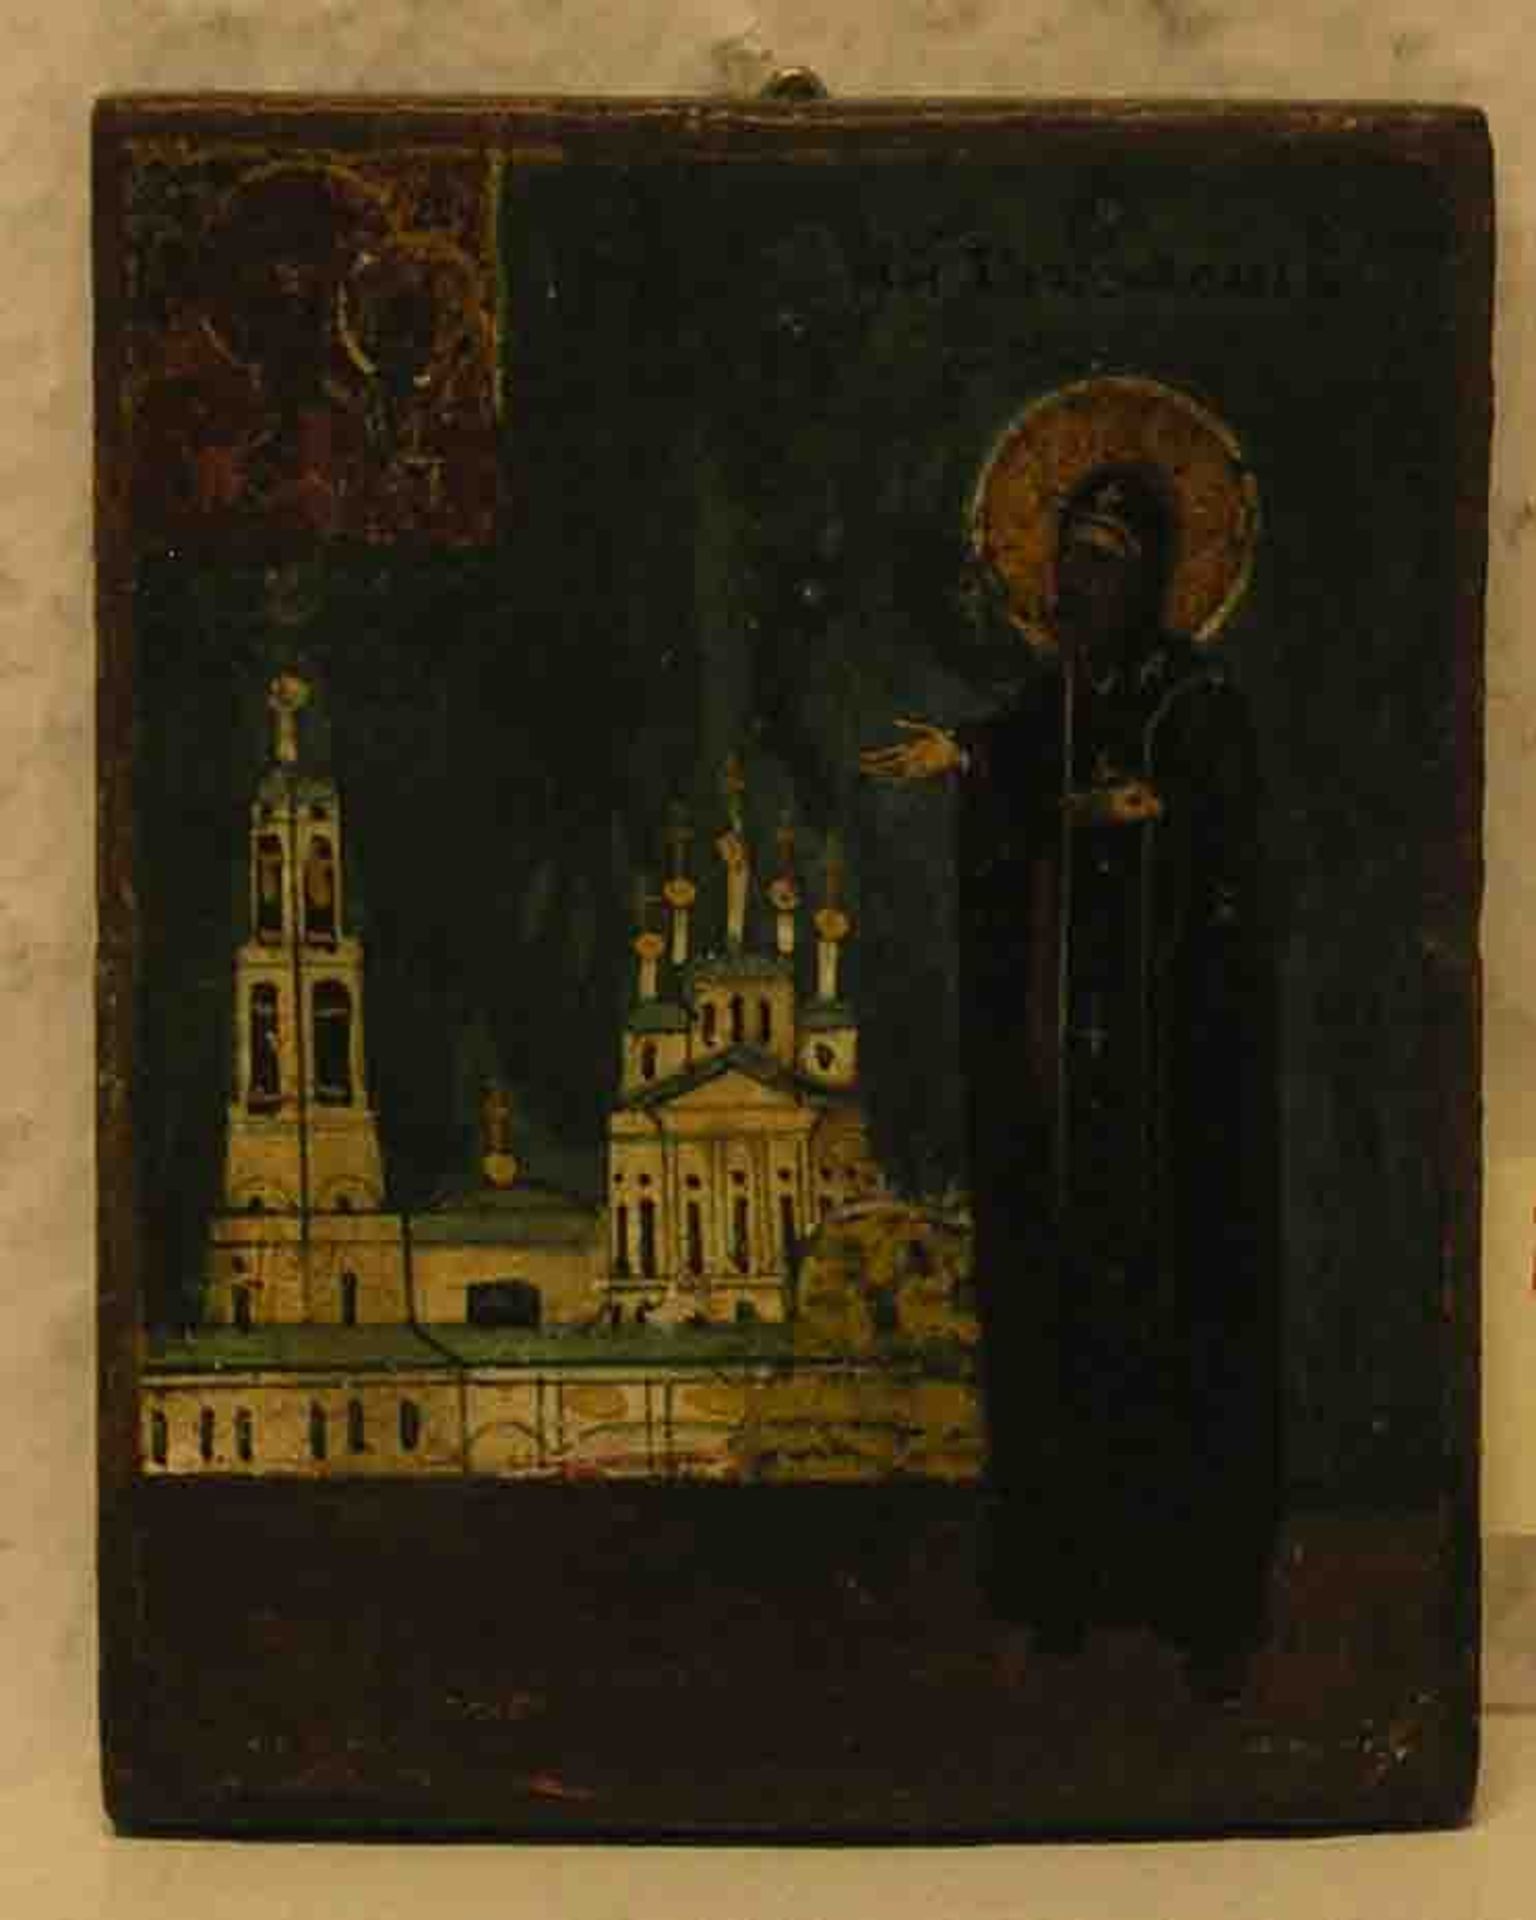 Reiseikone "Heiliger mit Kirche". Russland, 19. Jh., Tempera/Holz, 9 x 7cm.